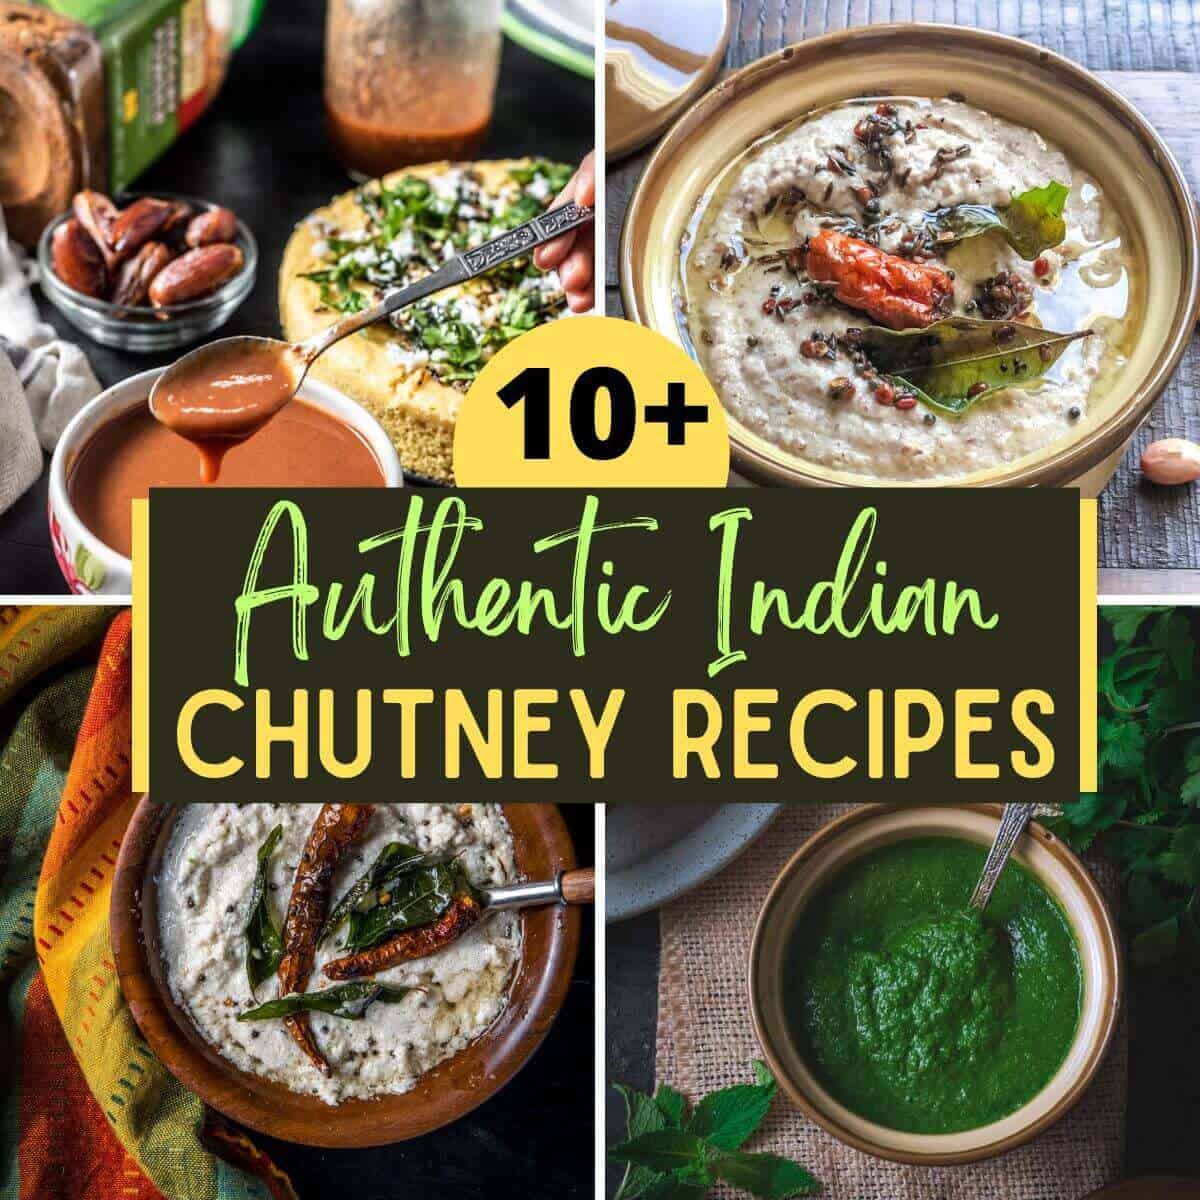 10+ Fingerlicking Indian chutney recipes